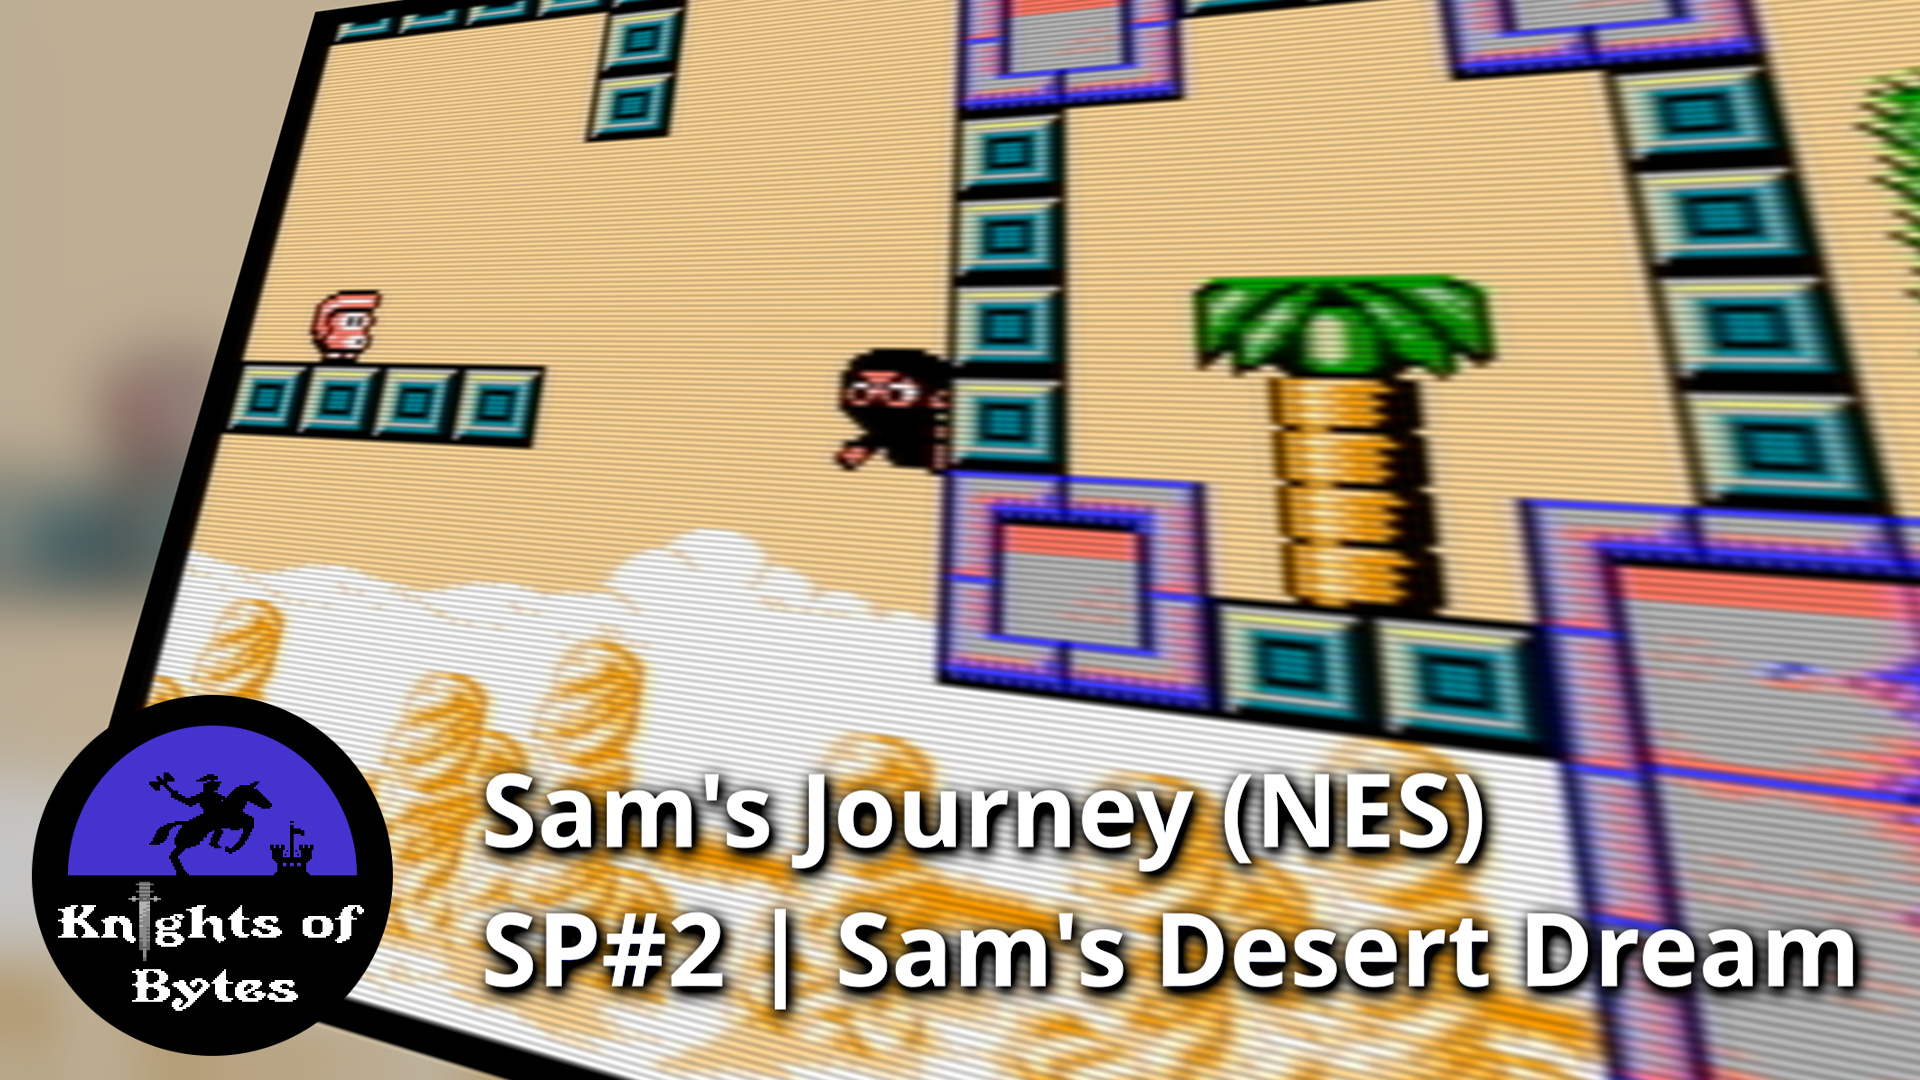 Sam's Journey NES Sneak Peek 2 Poster